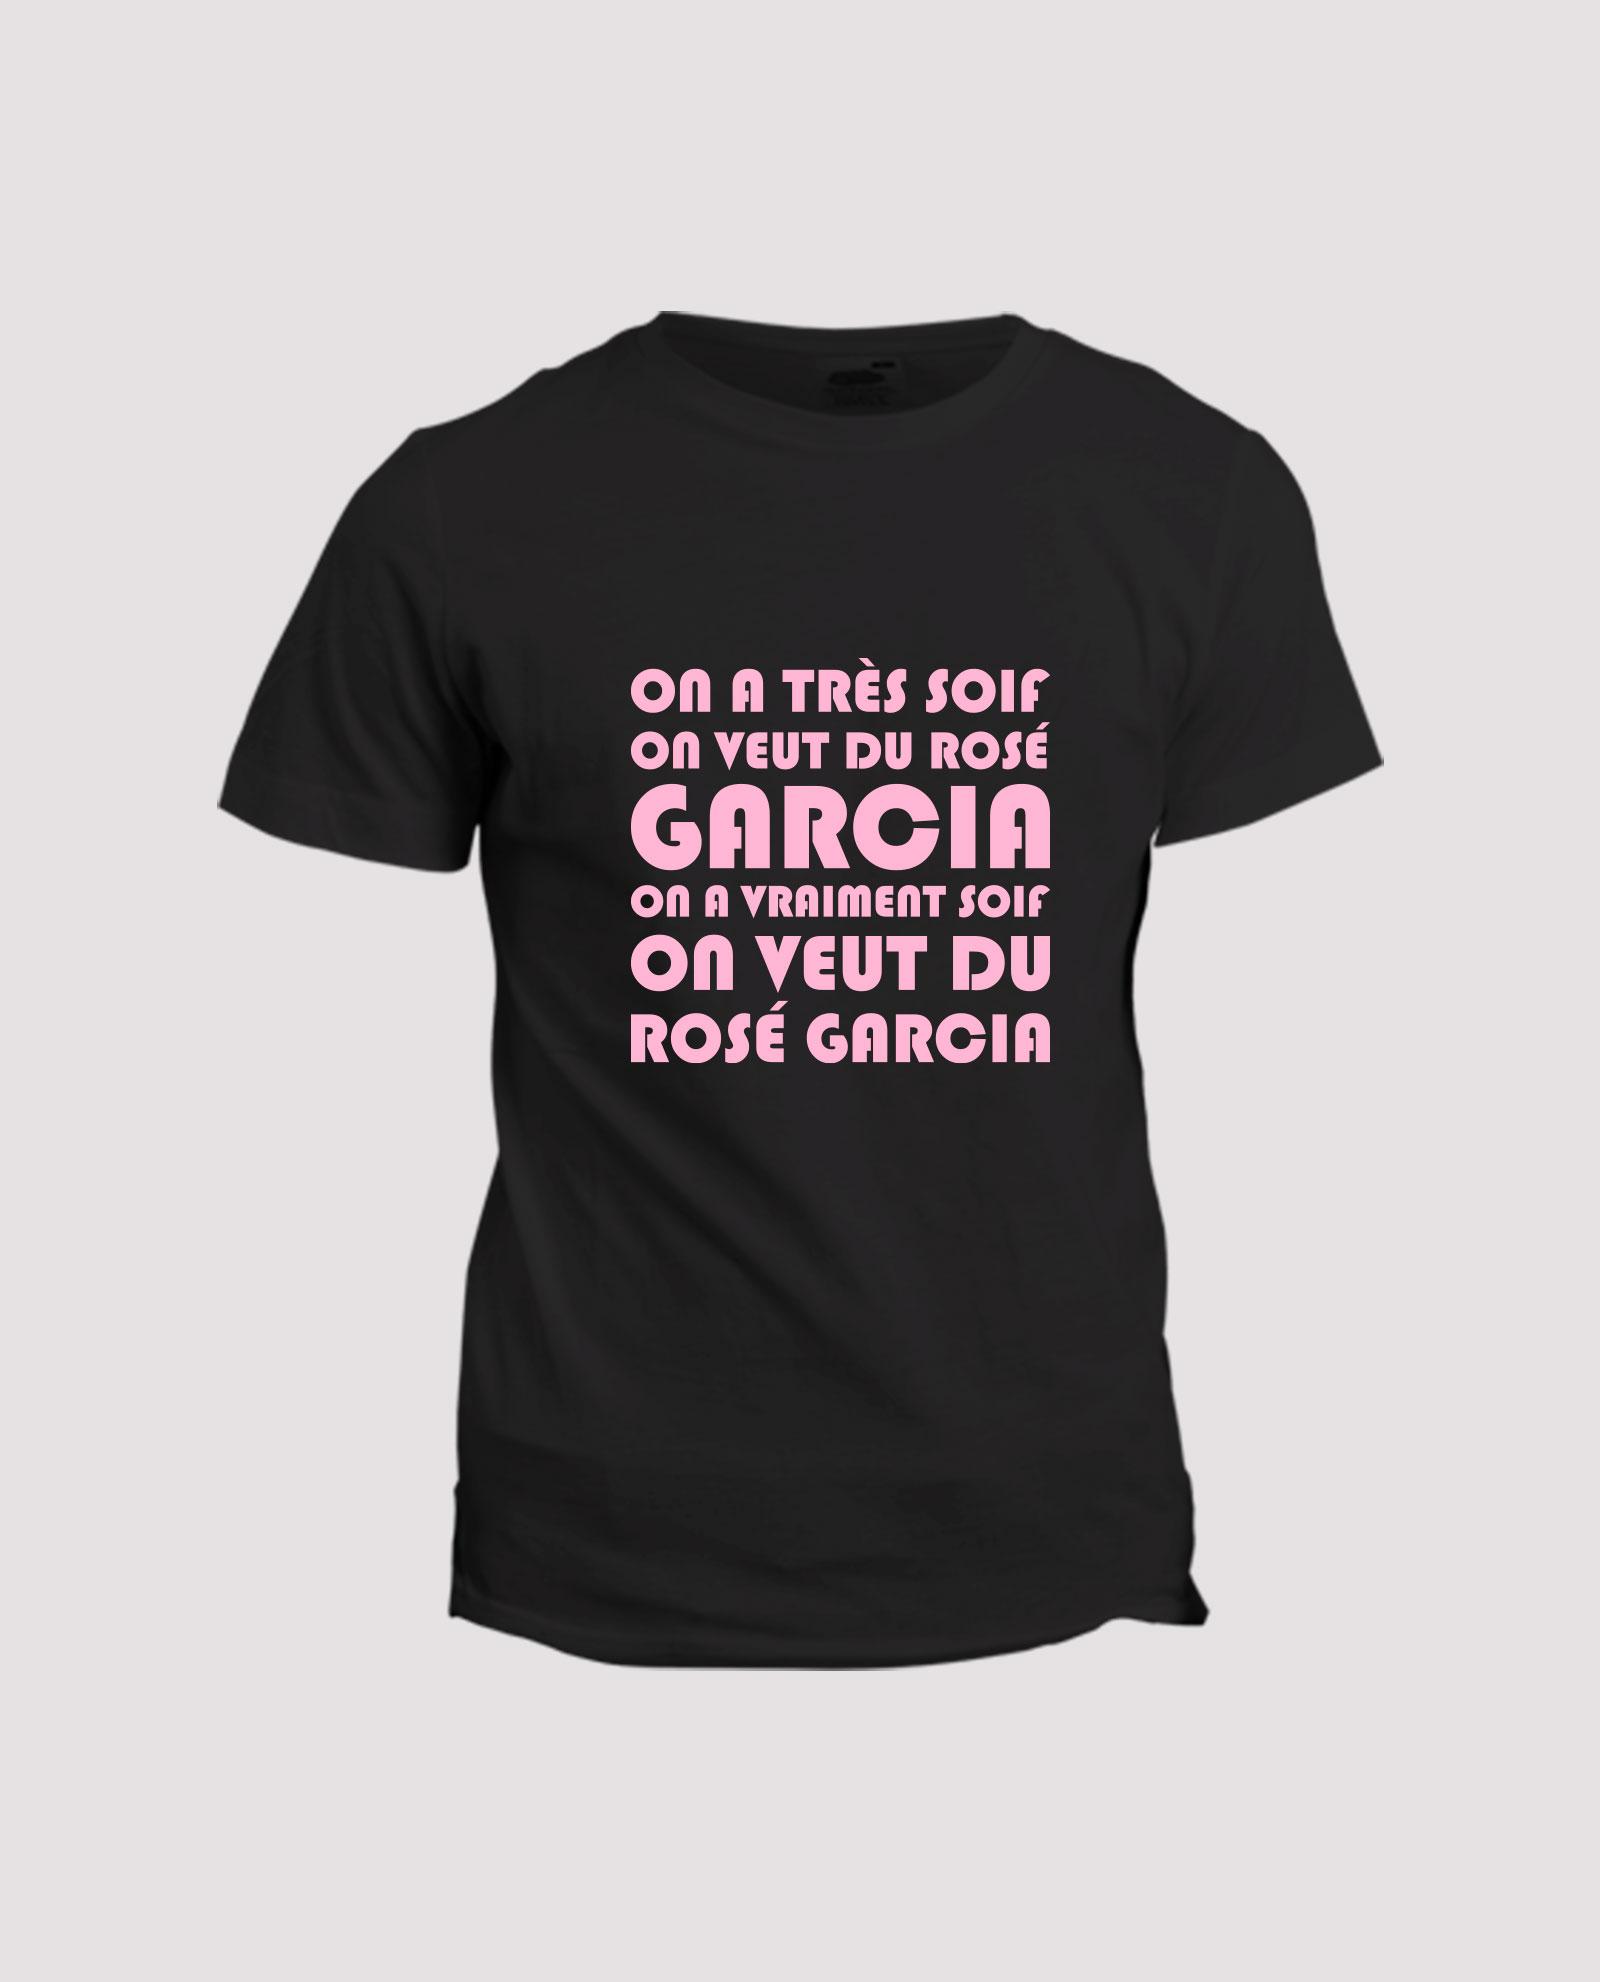 la-ligne-shop-t-shirt-humour-noir-fun-musique-chanson-on-a-tres-soif-on-veut-du-rose-garcia